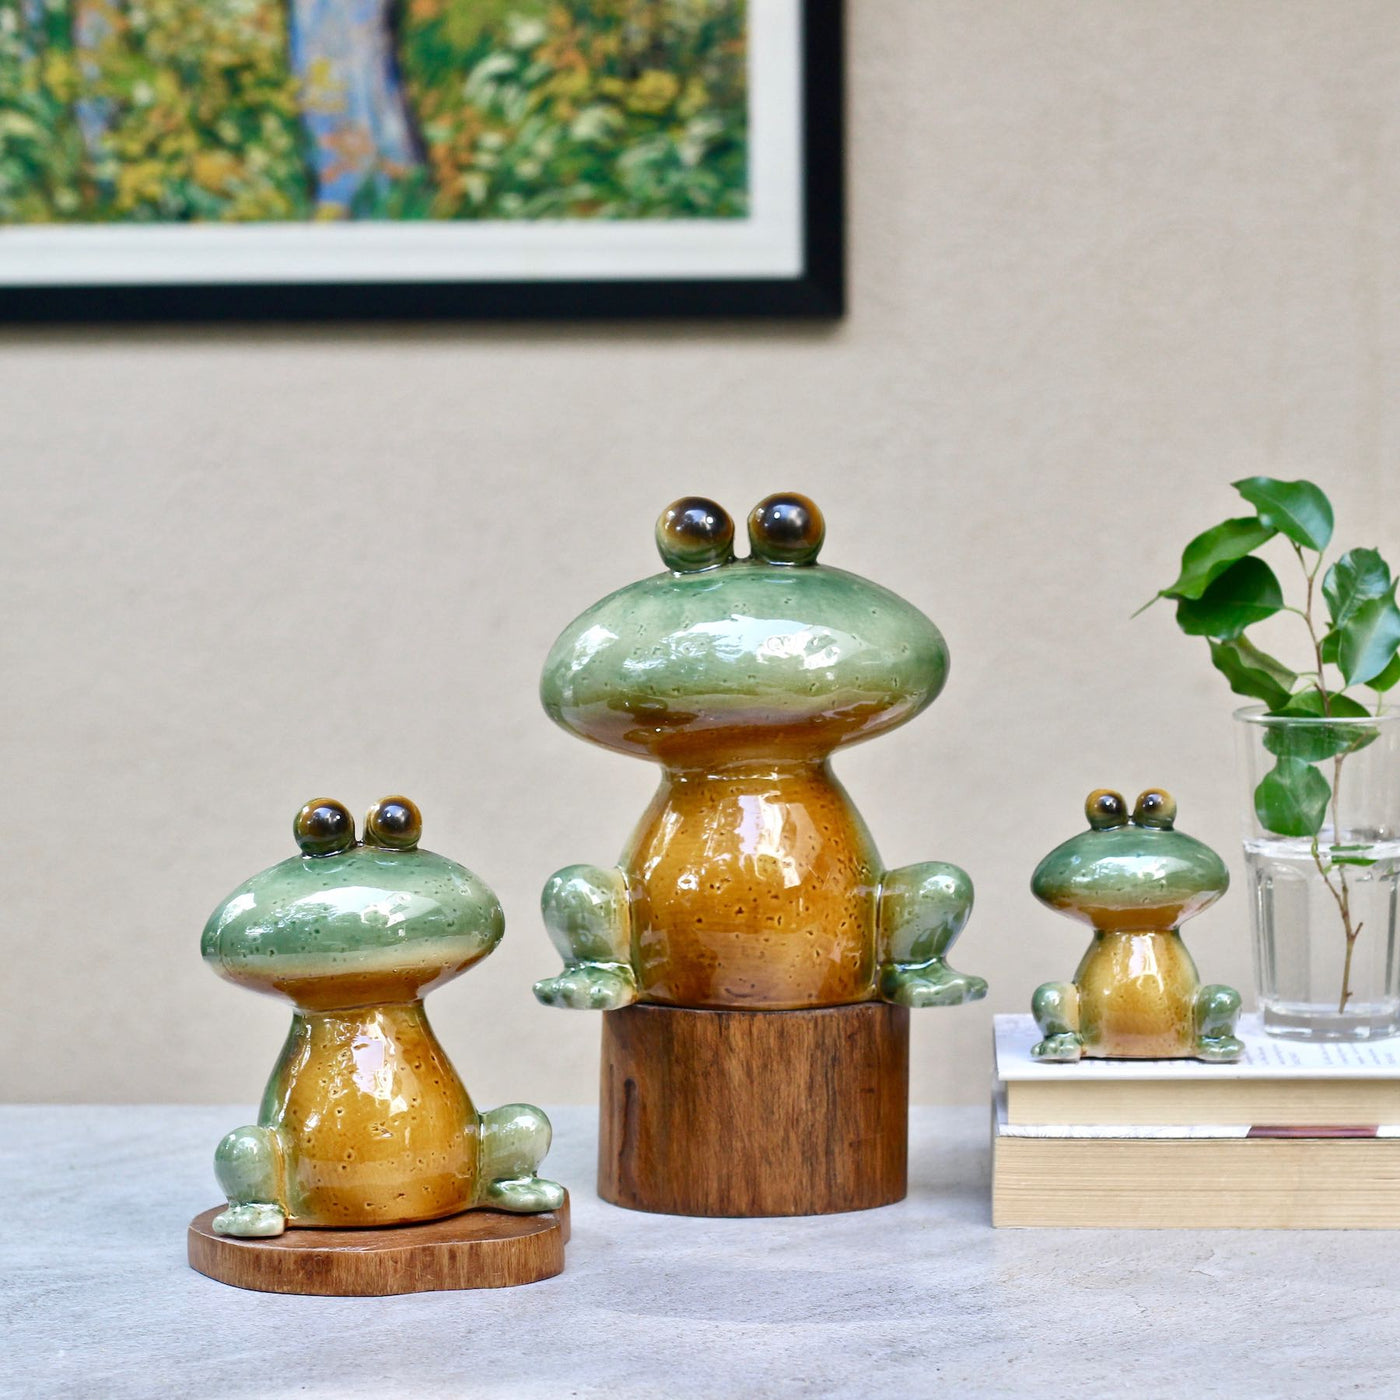 frog family ceramic showpiece